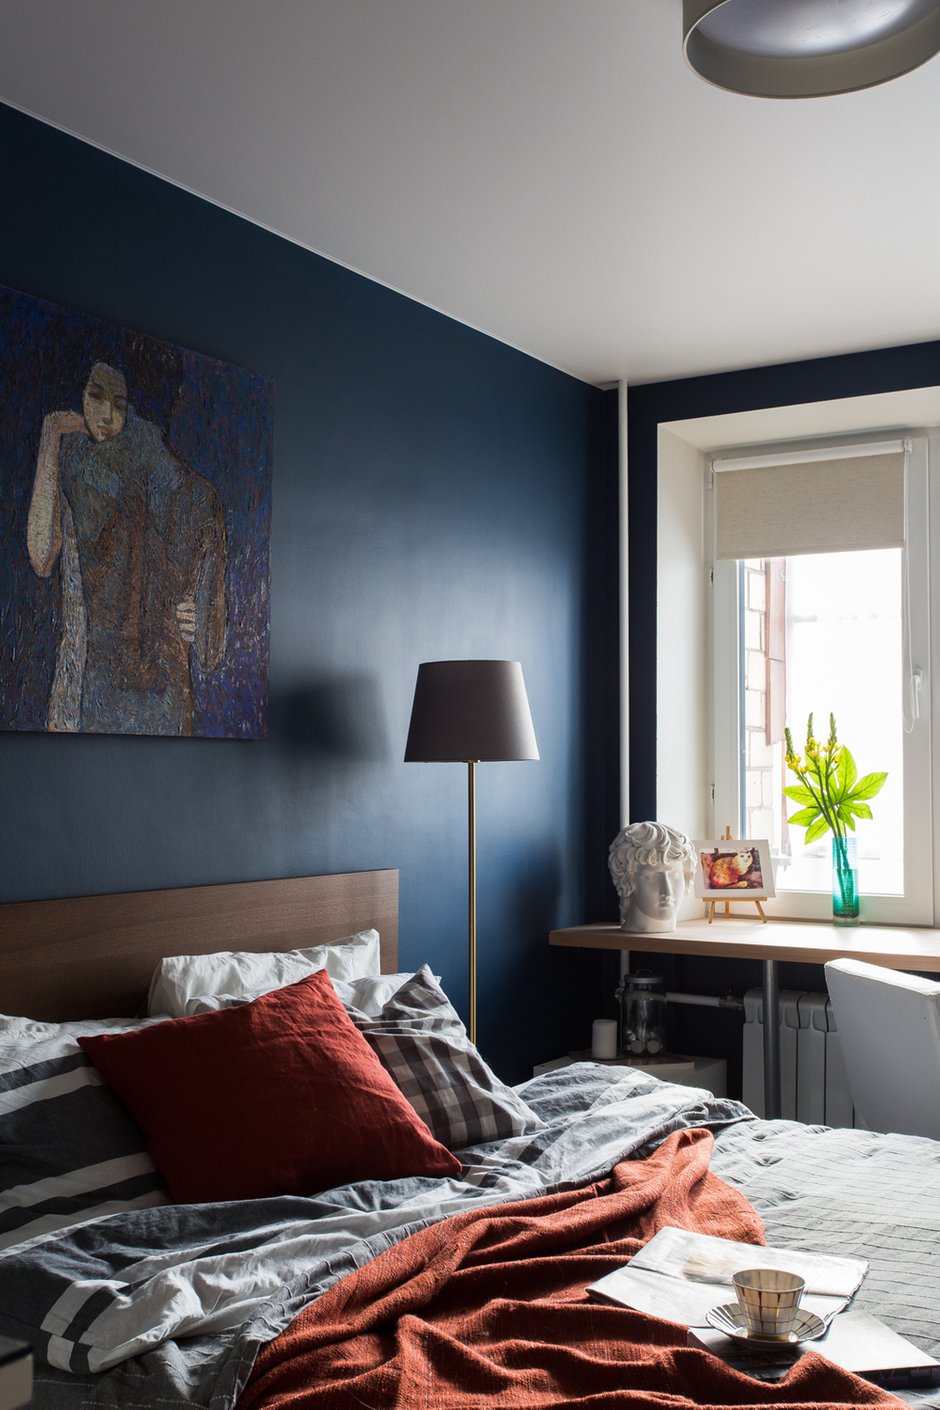 Для спальни не побоялись использовать темный синий цвет. В сочетании с терракотовыми деталями выглядит очень стильно.